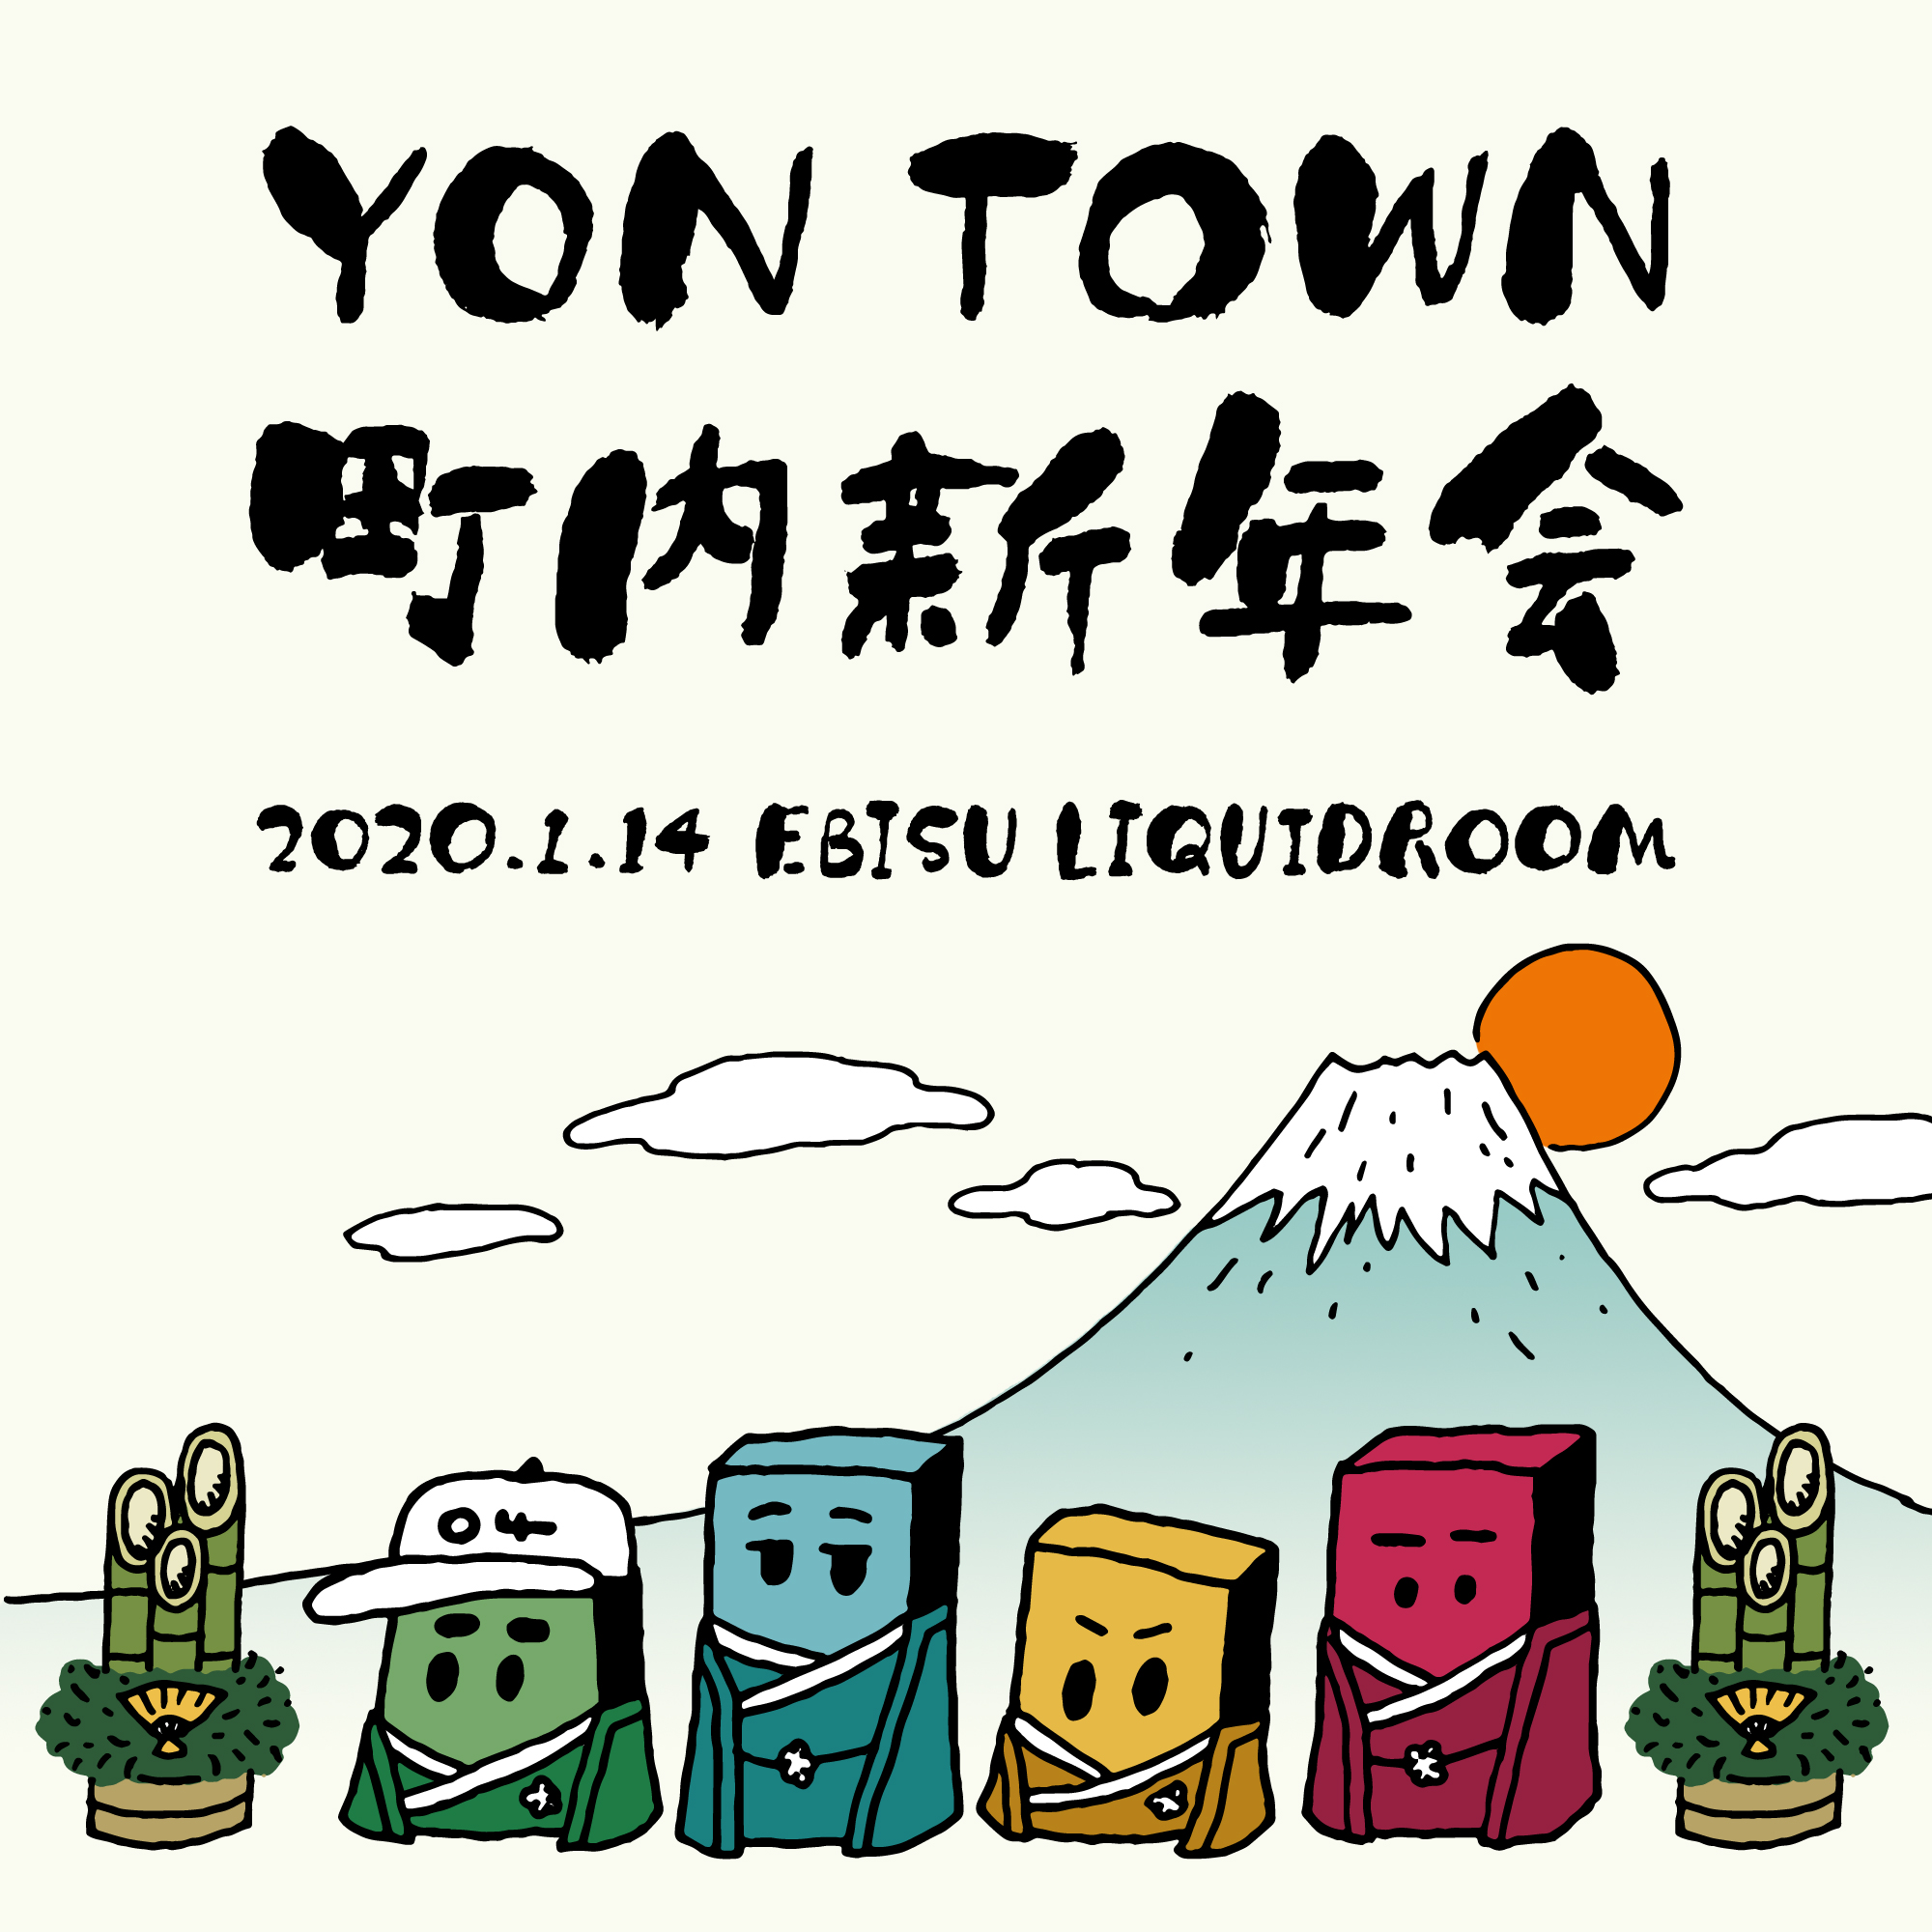 【東京】YON TOWN 町内新年会 (恵比寿LIQUIDROOM)